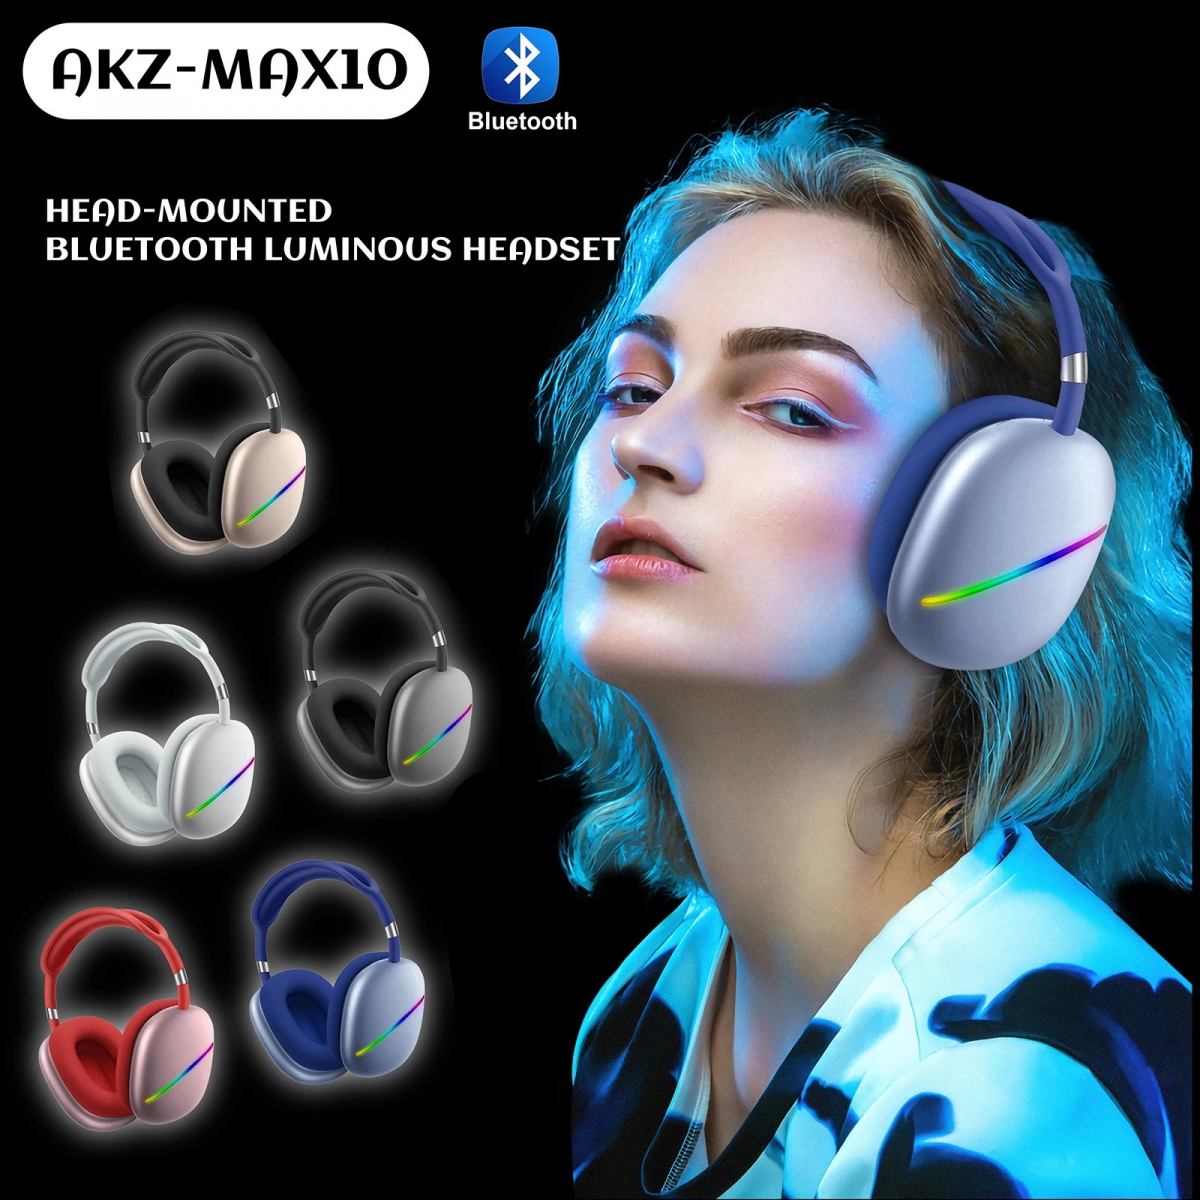 Max10 trådlösa hörlurar med LED-strimma, 40mm, guld